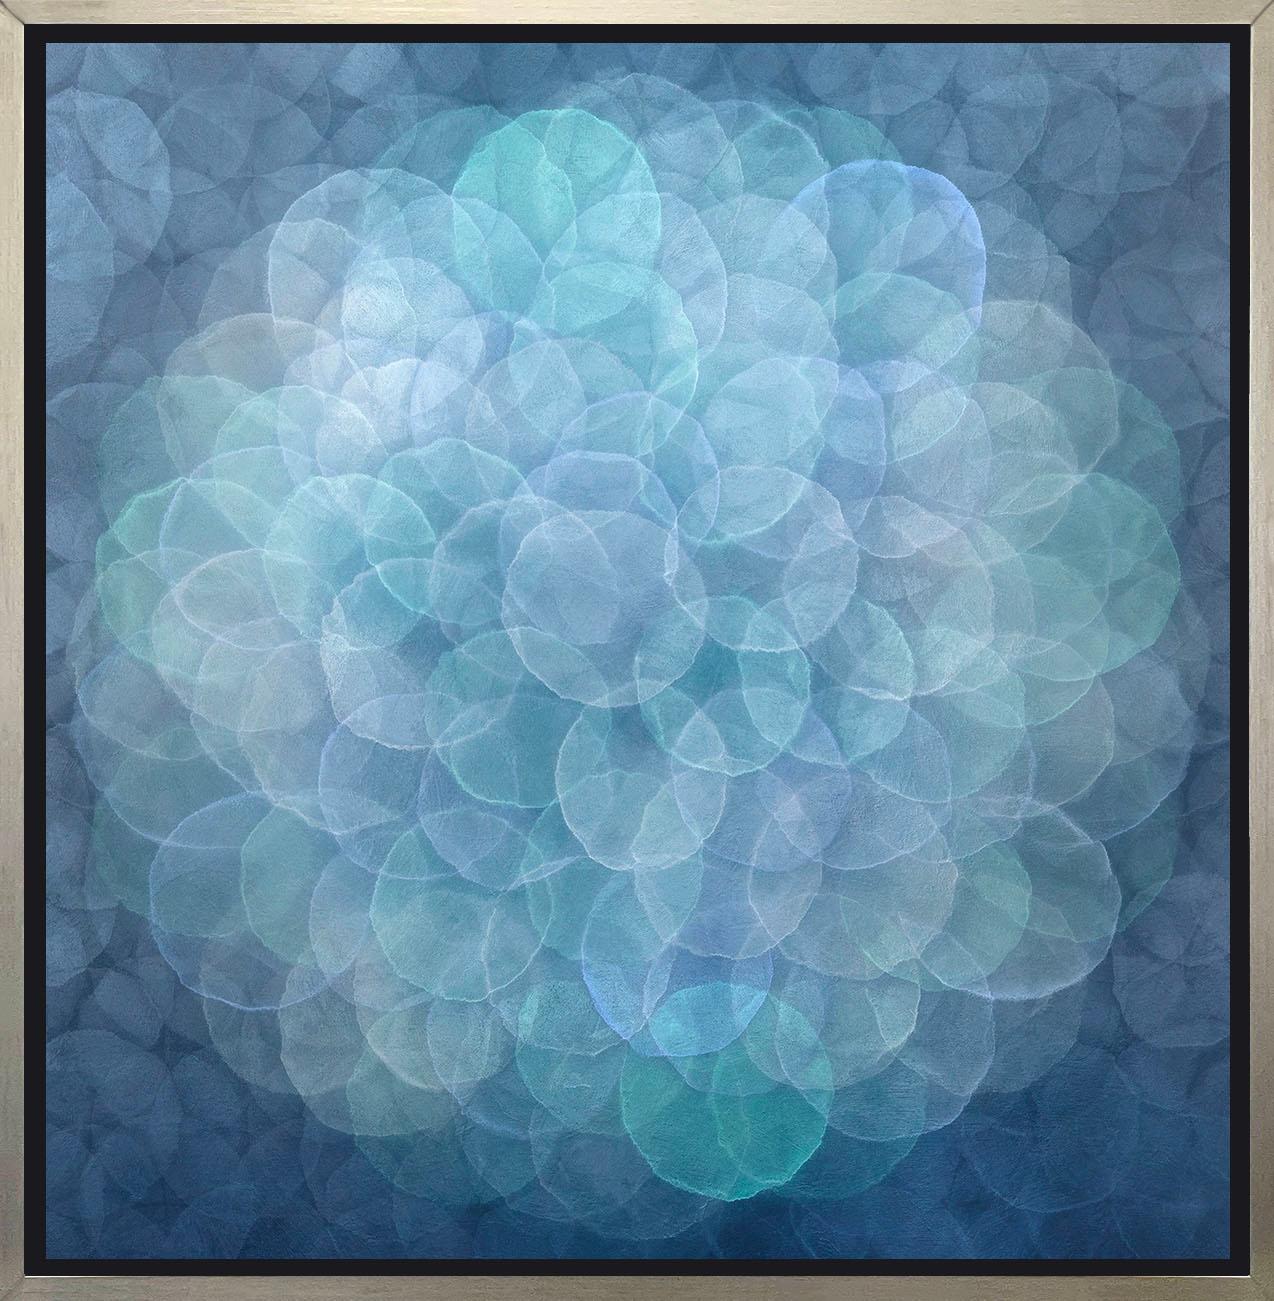 Cette impression abstraite en édition limitée de Roger Mudre présente une palette de bleus, de verts et de gris argentés. Elle présente de petits cercles qui se chevauchent et semblent presque briller, assemblés en un motif circulaire plus grand au